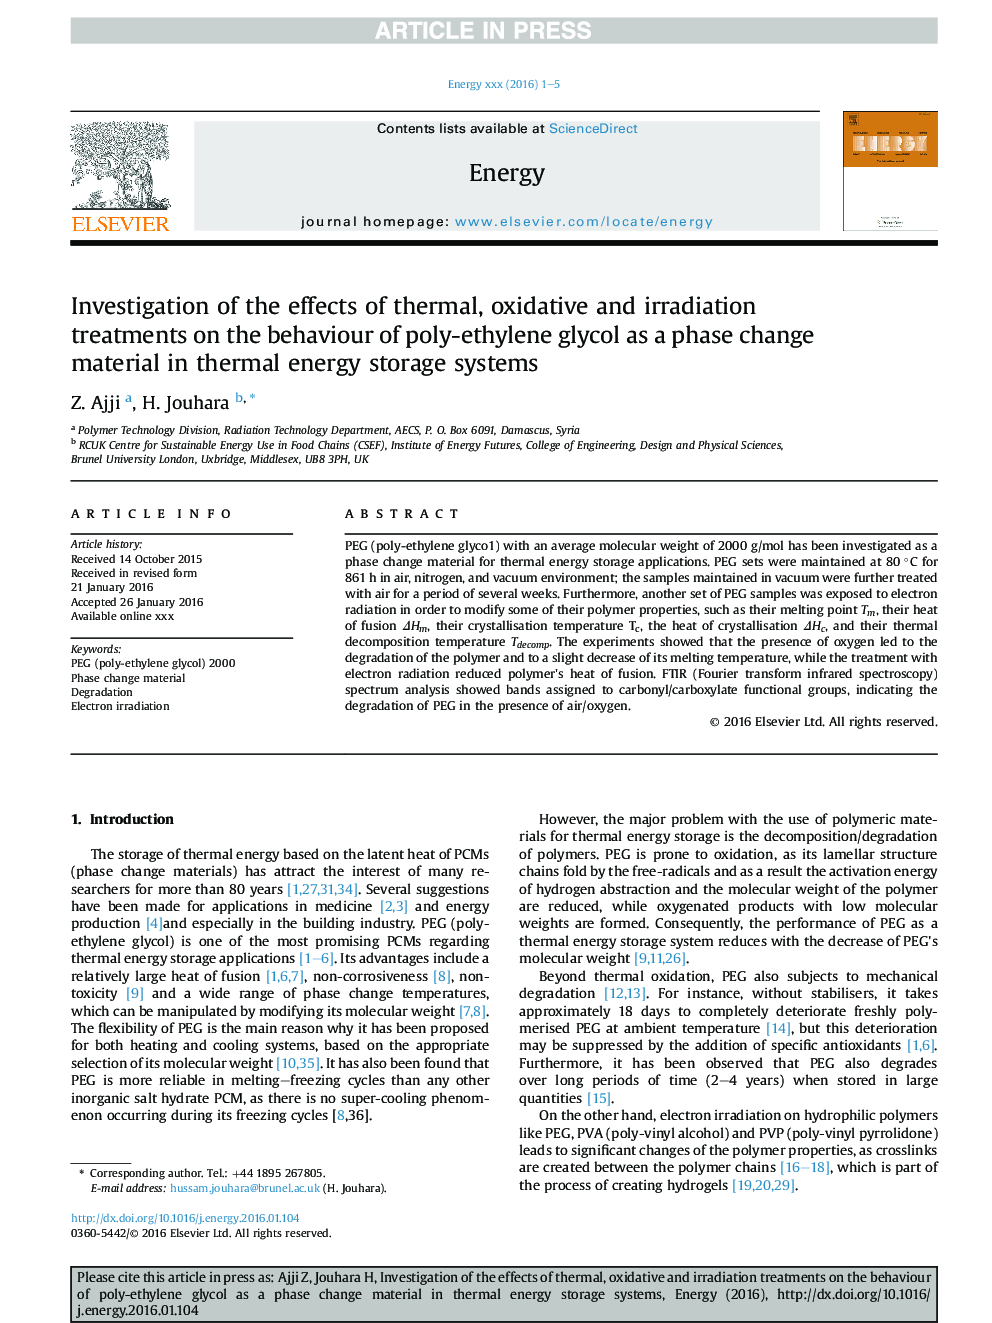 بررسی اثرات درمان های حرارتی، اکسید کننده و اشعه بر رفتار پلی اتیلن گلیکول به عنوان یک ماده تغییر فاز در سیستم های ذخیره انرژی حرارتی 